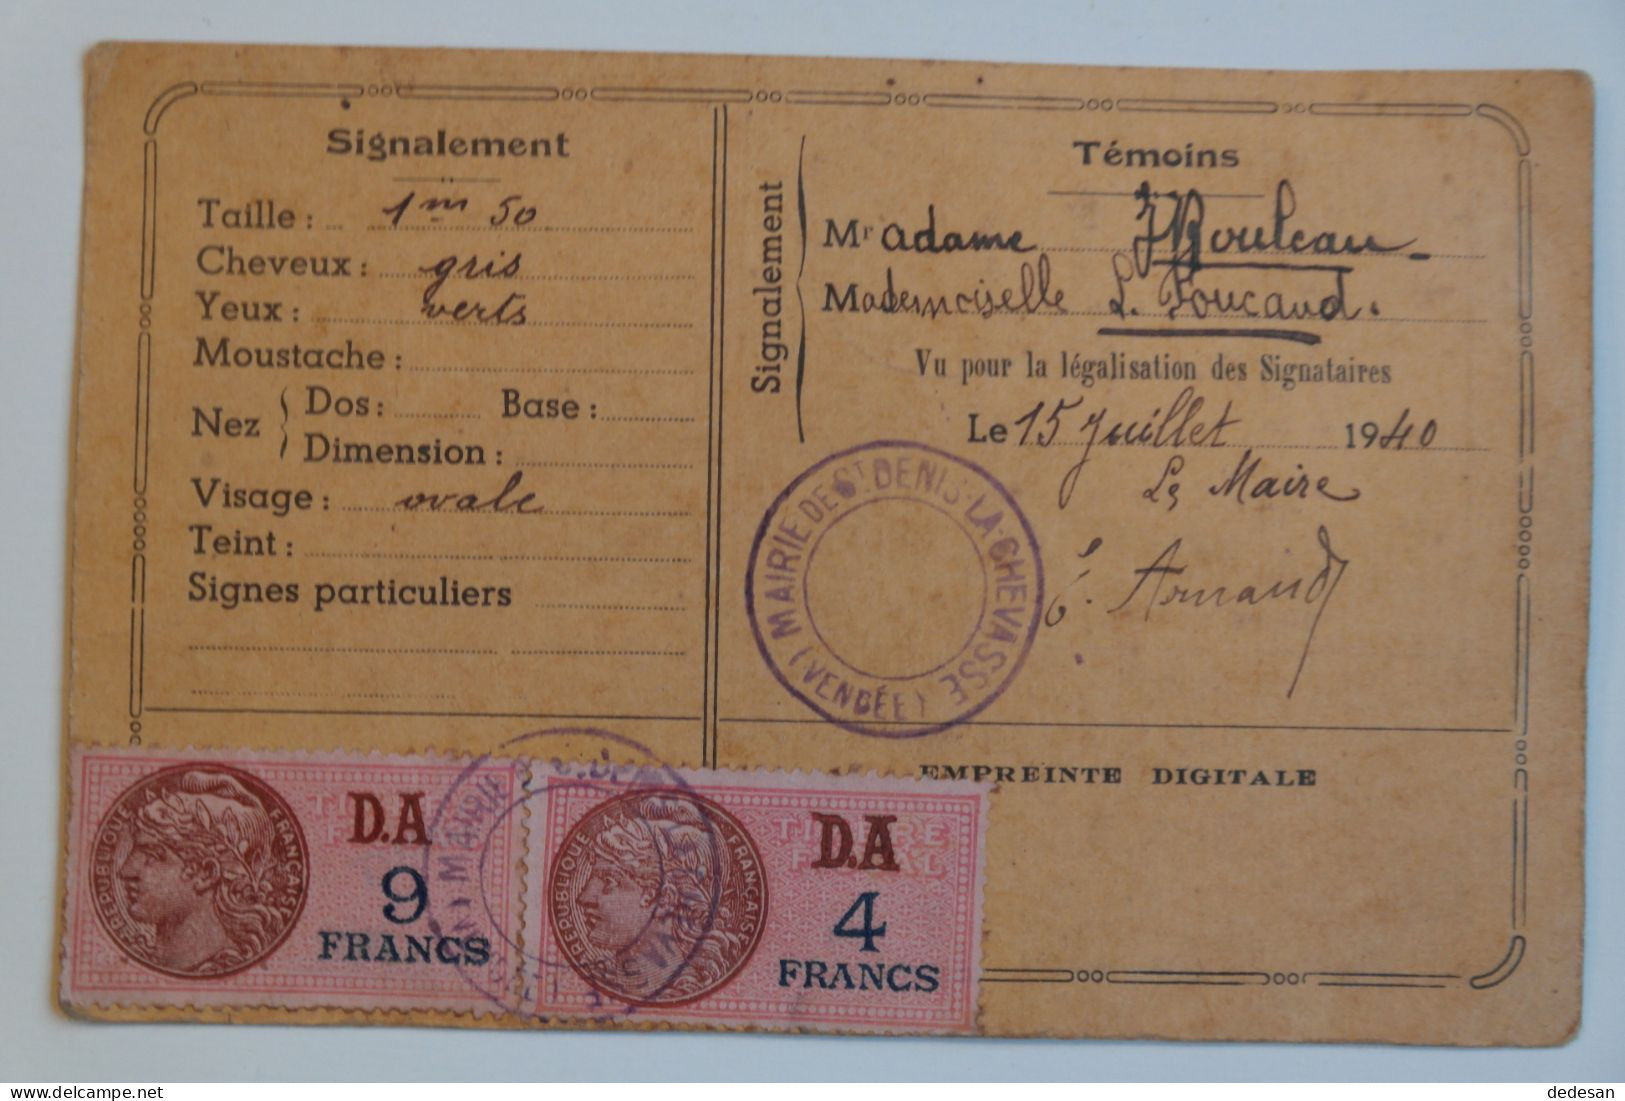 Carte Identité Juillet 1940 D'une Personne Née En 1873 - CHA01 - Documents Historiques